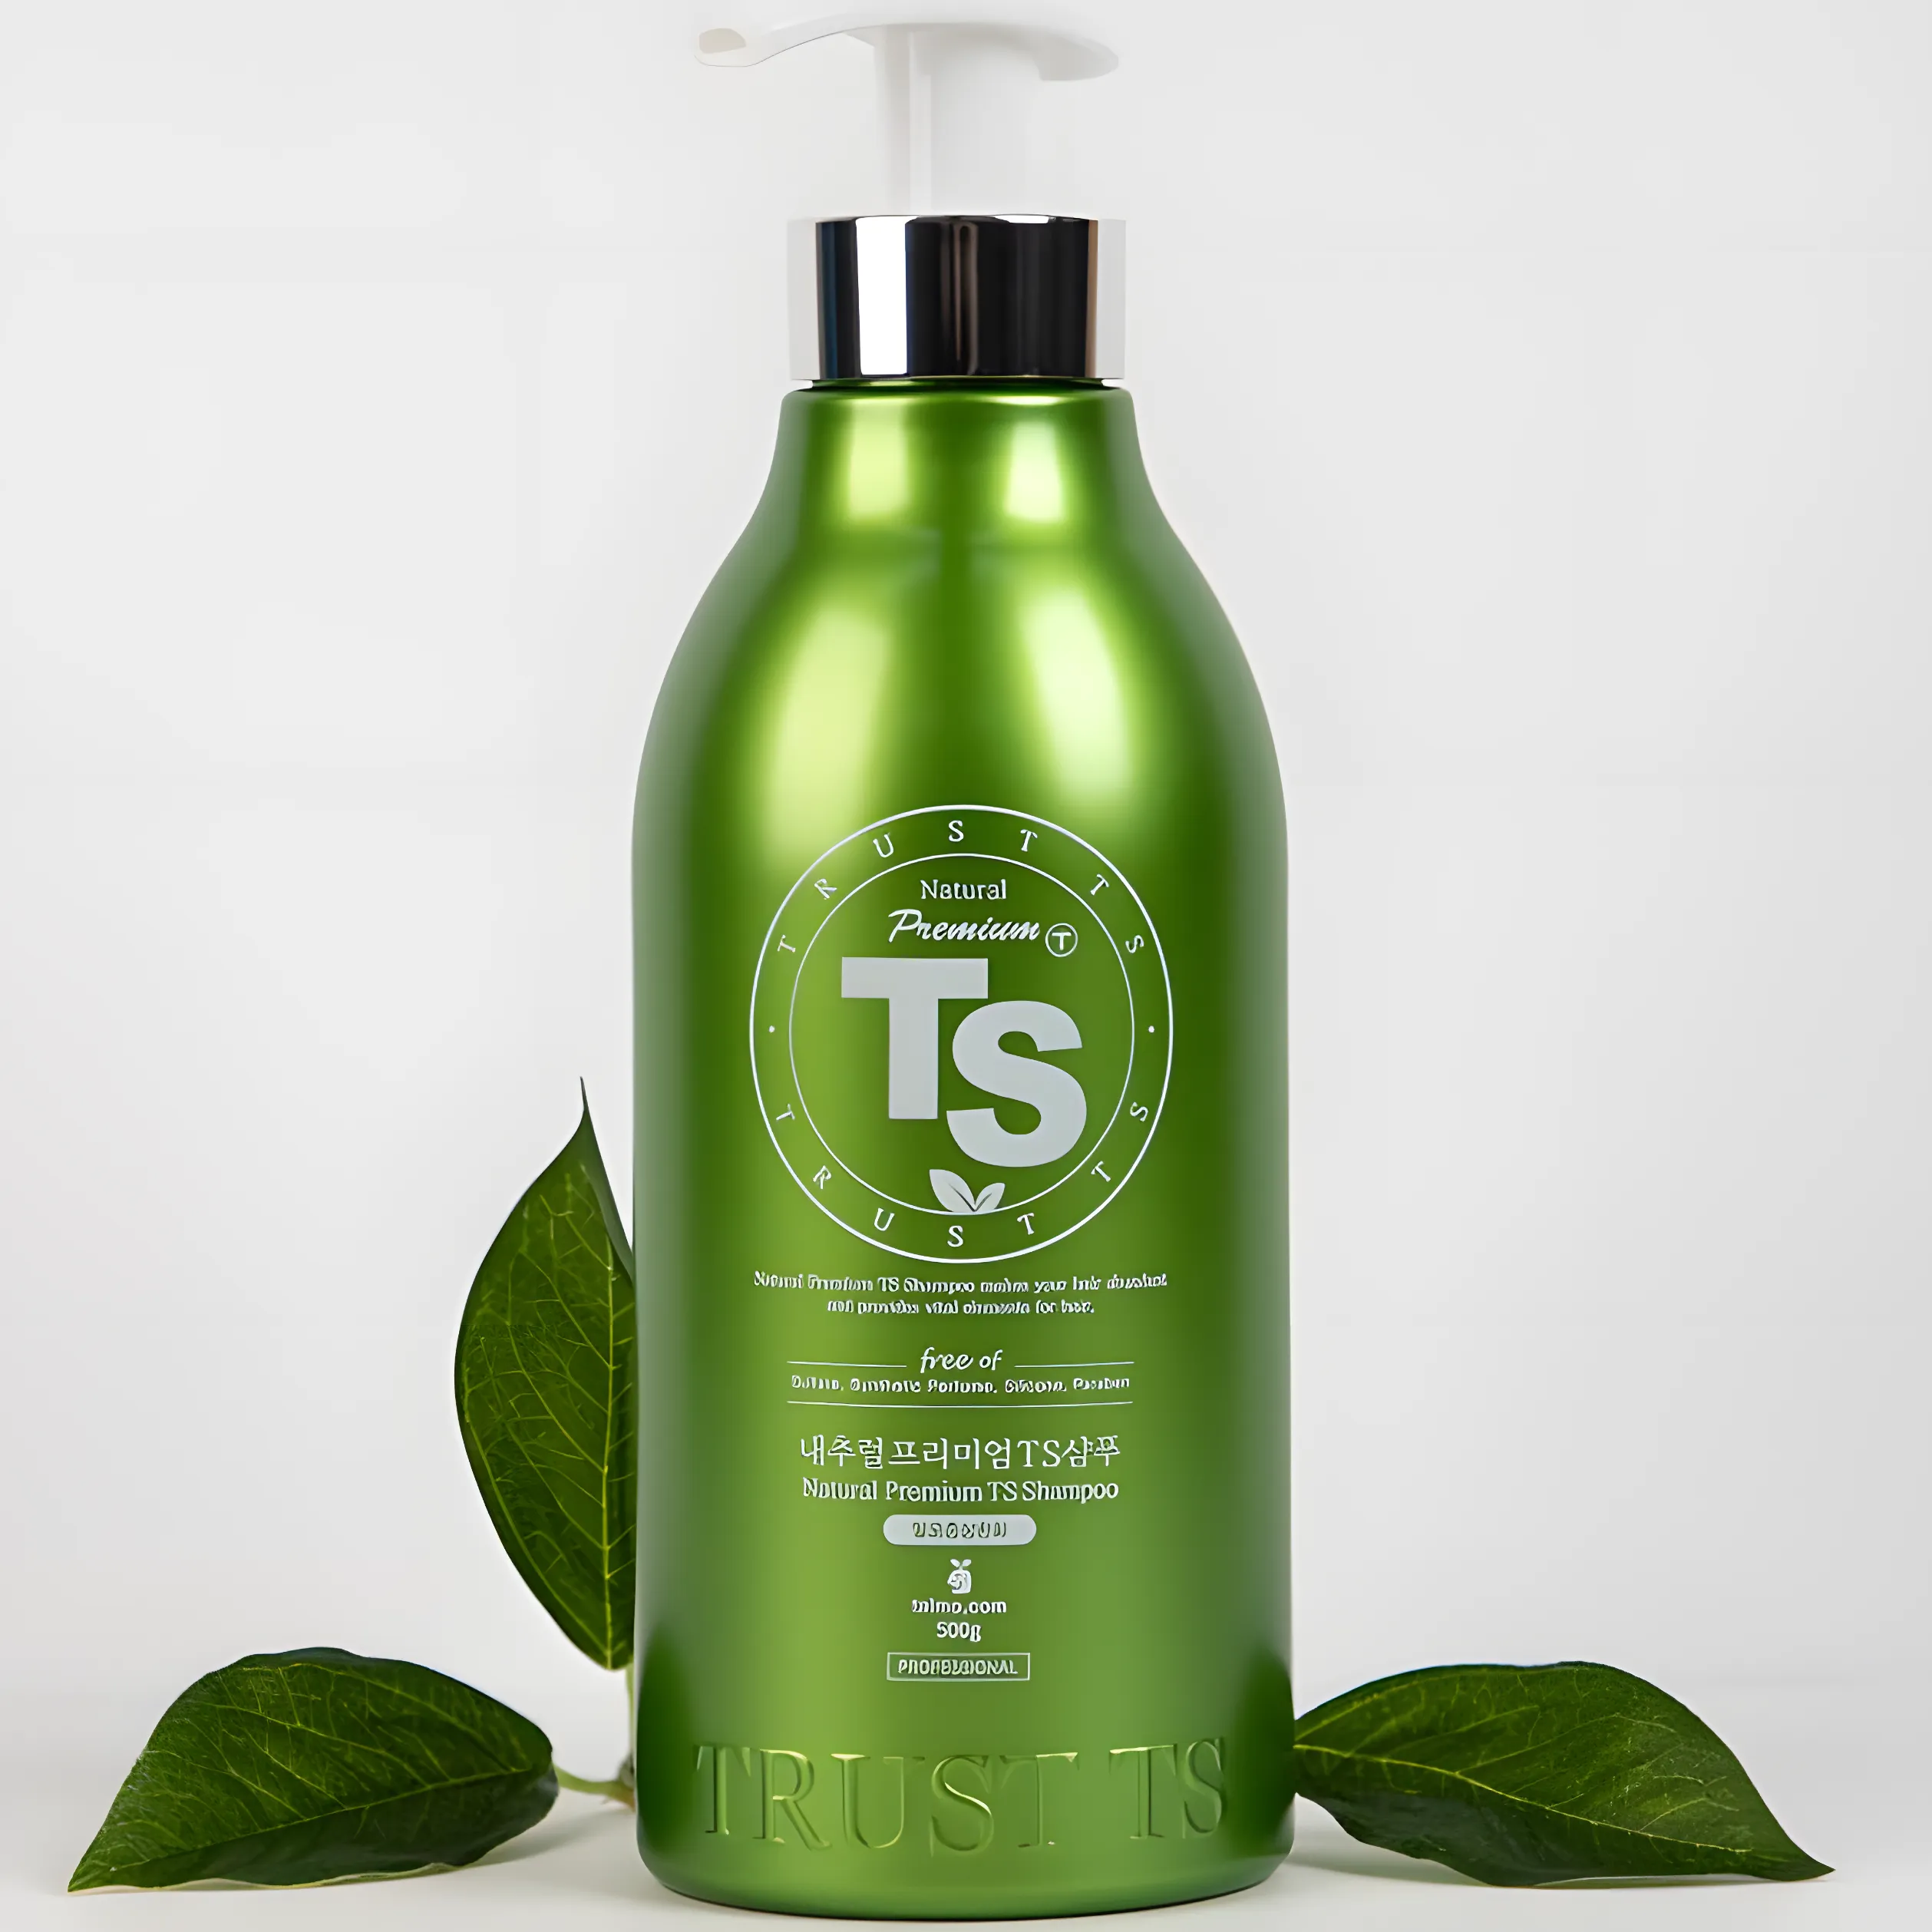 Free Natural Premium Shampoo (16.9 Fl Oz) By Ts Shampoo Worth $28.97